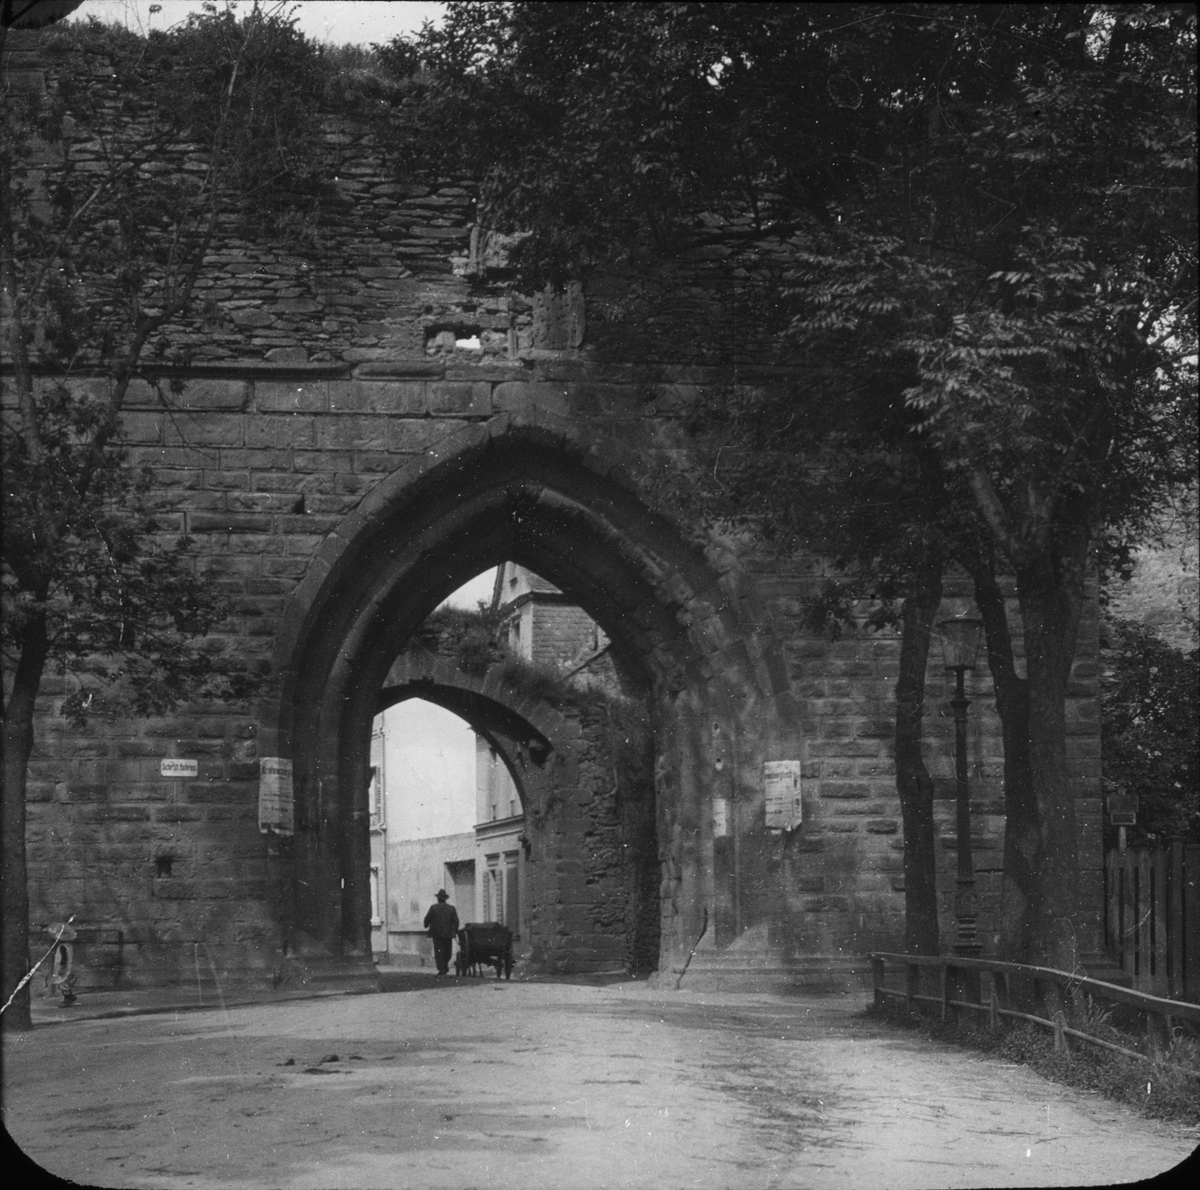 Skioptikonbild med motiv av Koblenz Gate, gamla slottsporten, Andernasch.
Bilden har förvarats i kartong märkt: Resan 1904. Andernach I.